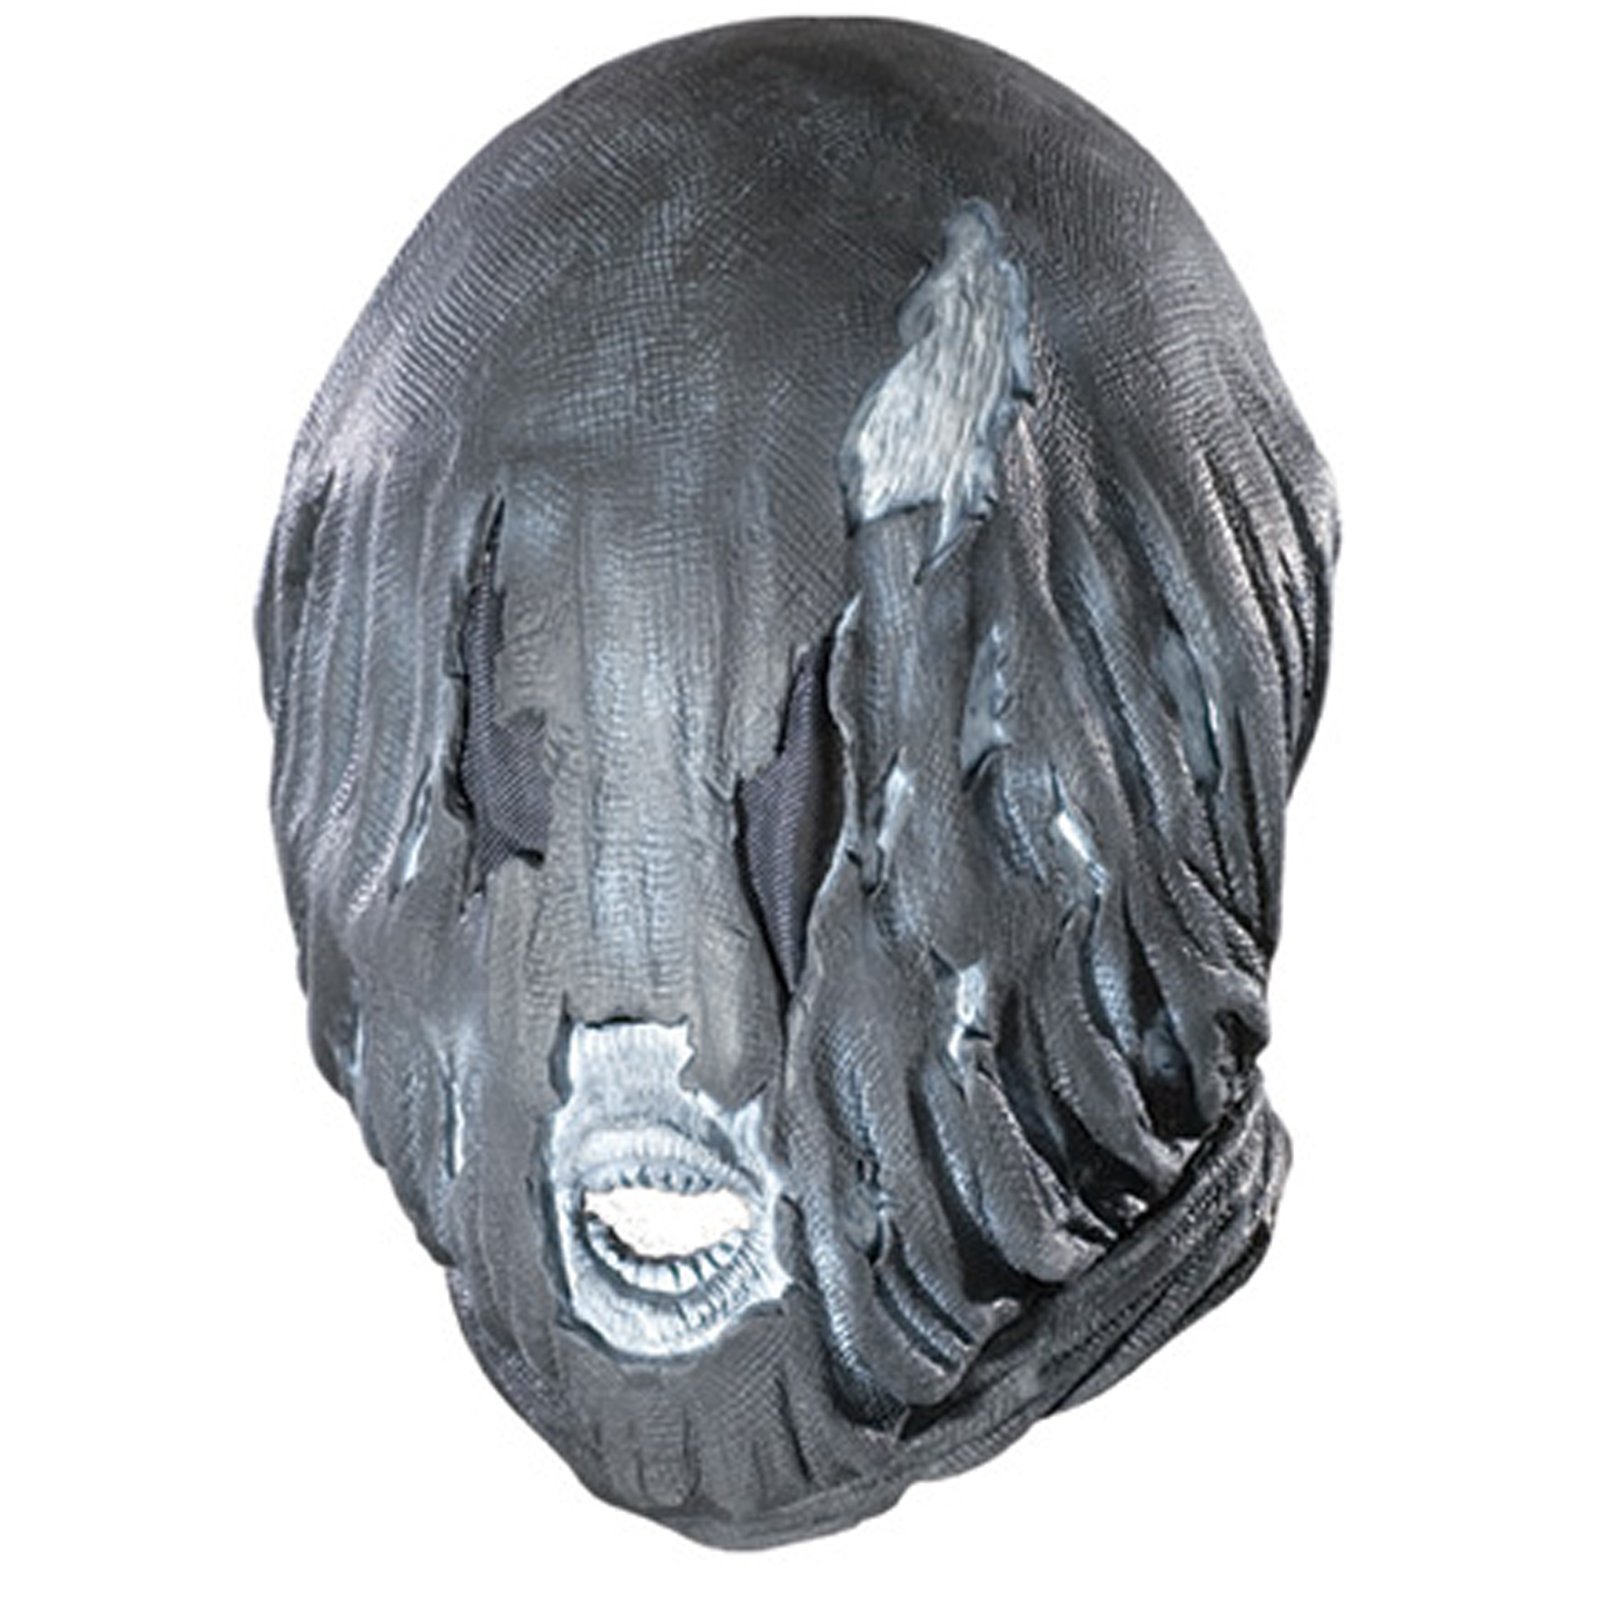 Harry Potter - Dementor Deluxe Mask